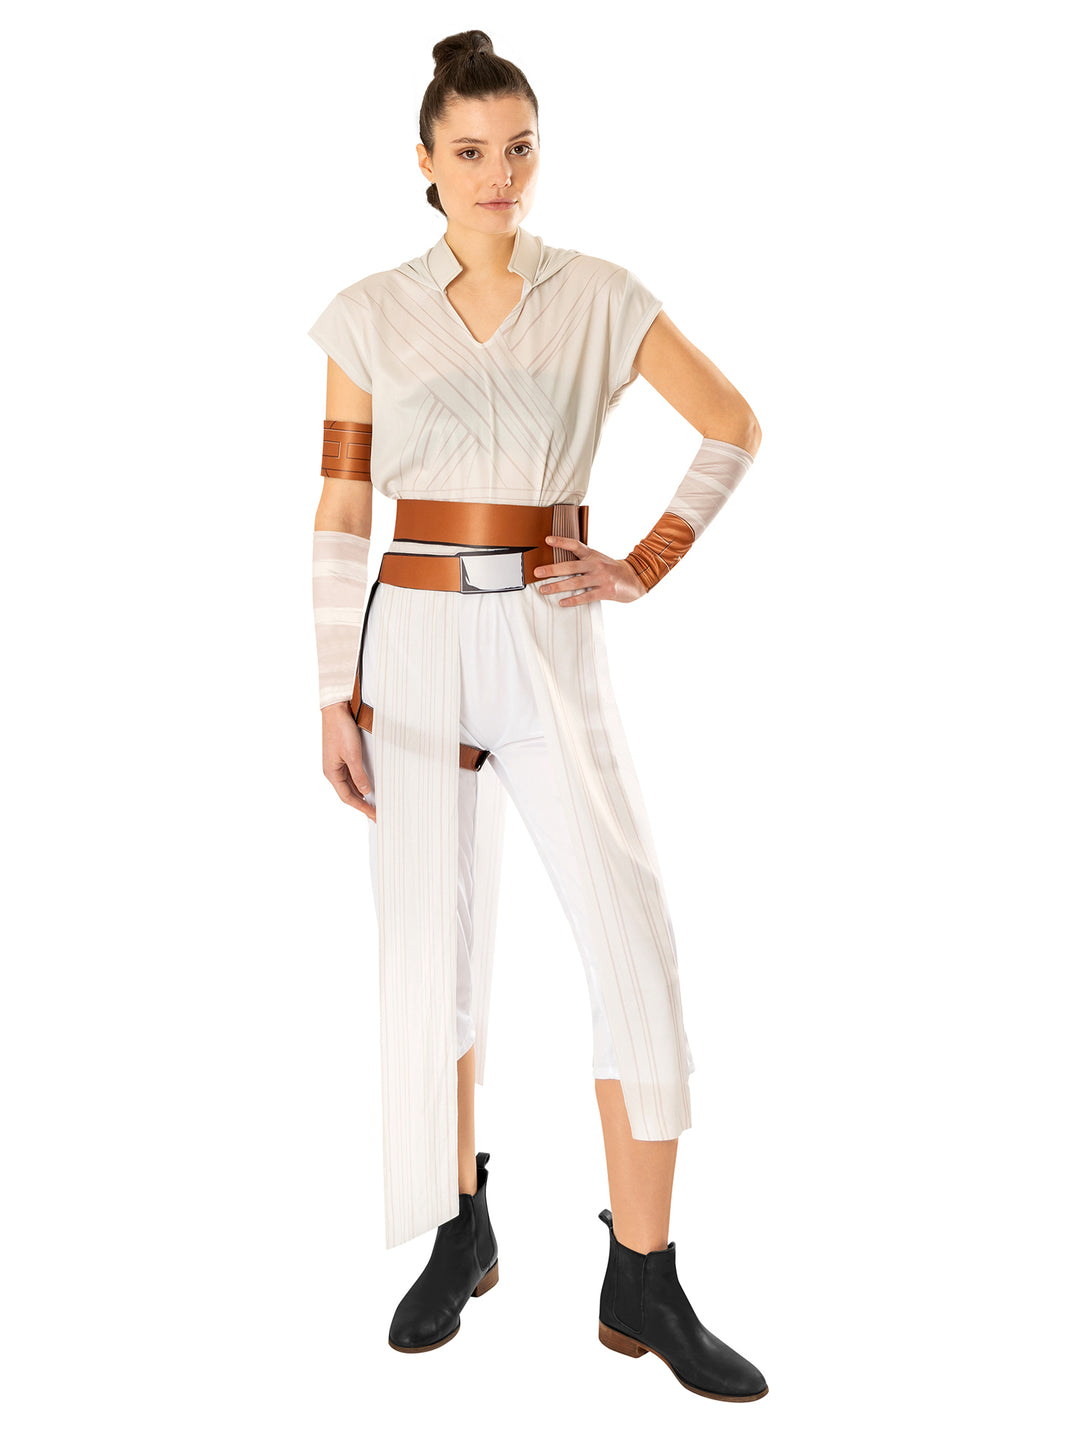 Adult Rey Costume Episode IX Star Wars Rise of Skywalker